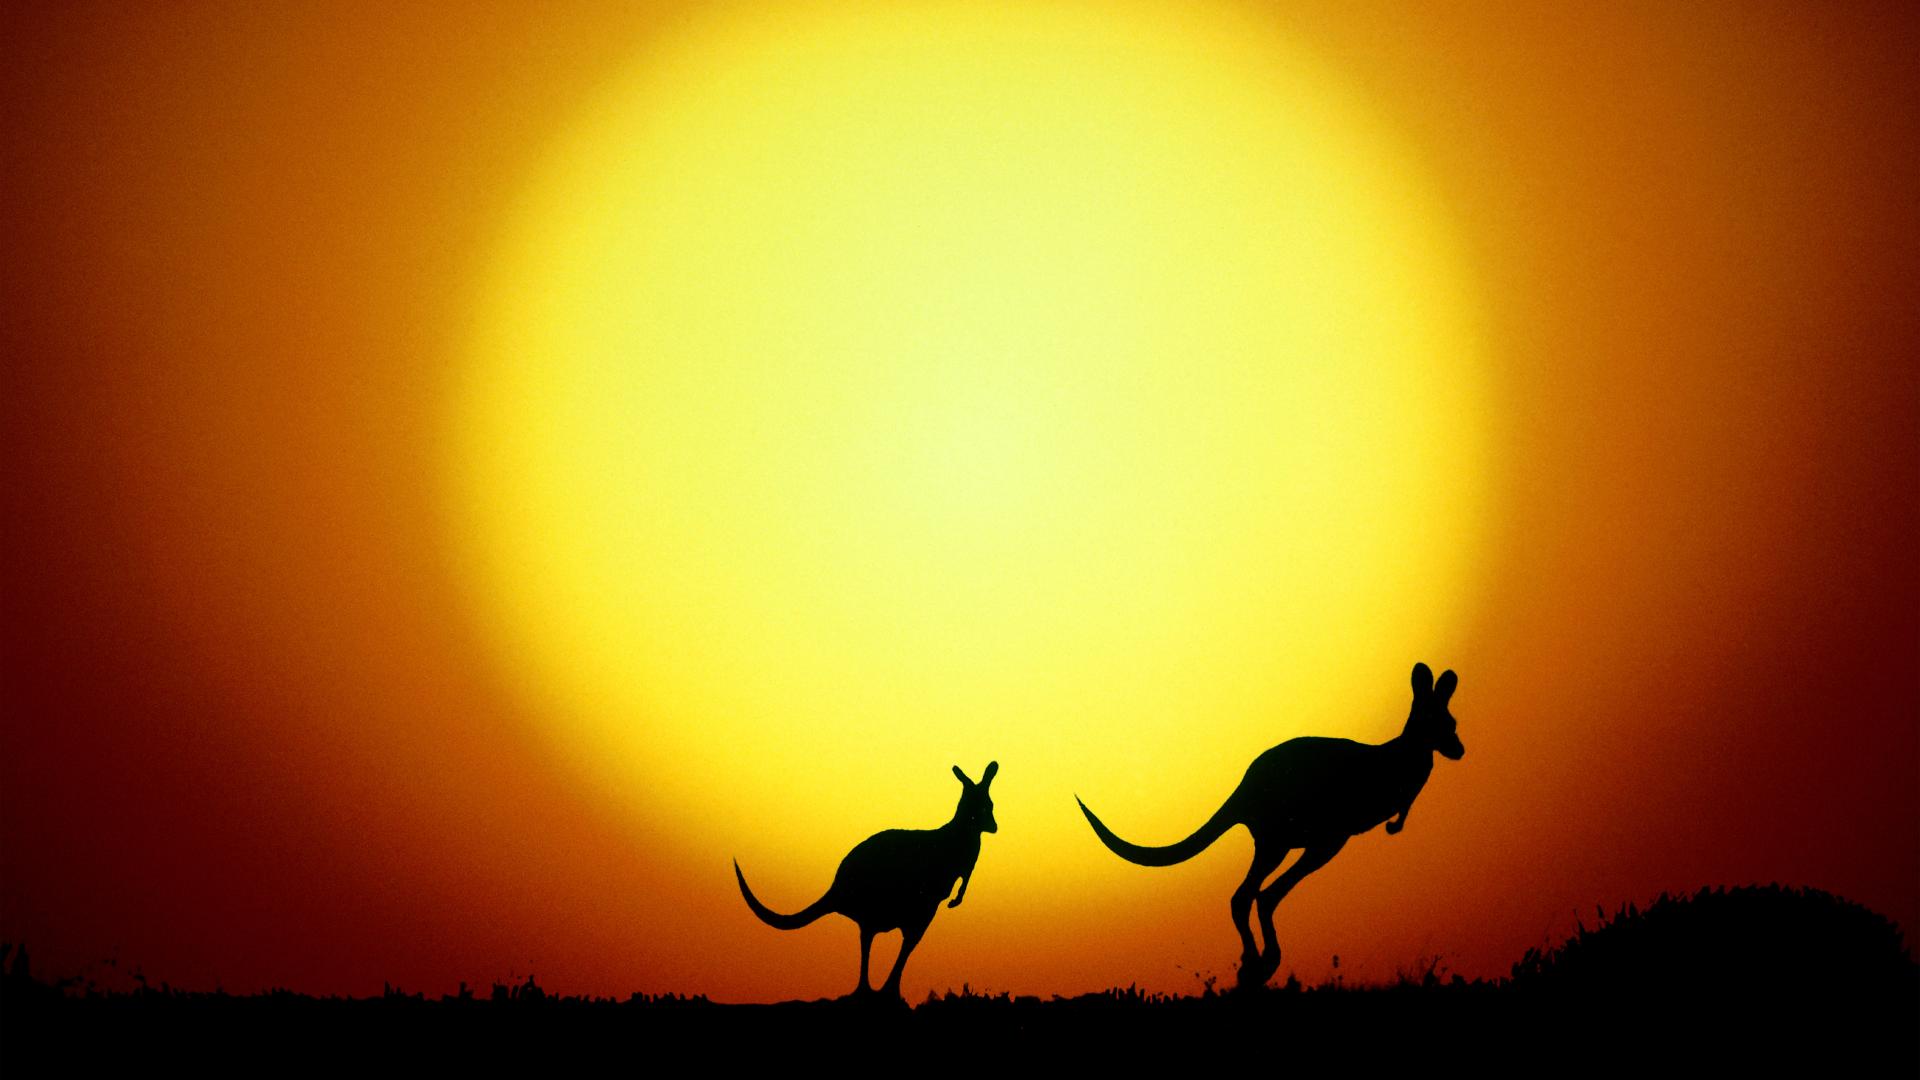 закат, Солнце, желтый цвет, животные, оранжевый цвет, силуэты, Австралия, кенгуру - обои на рабочий стол